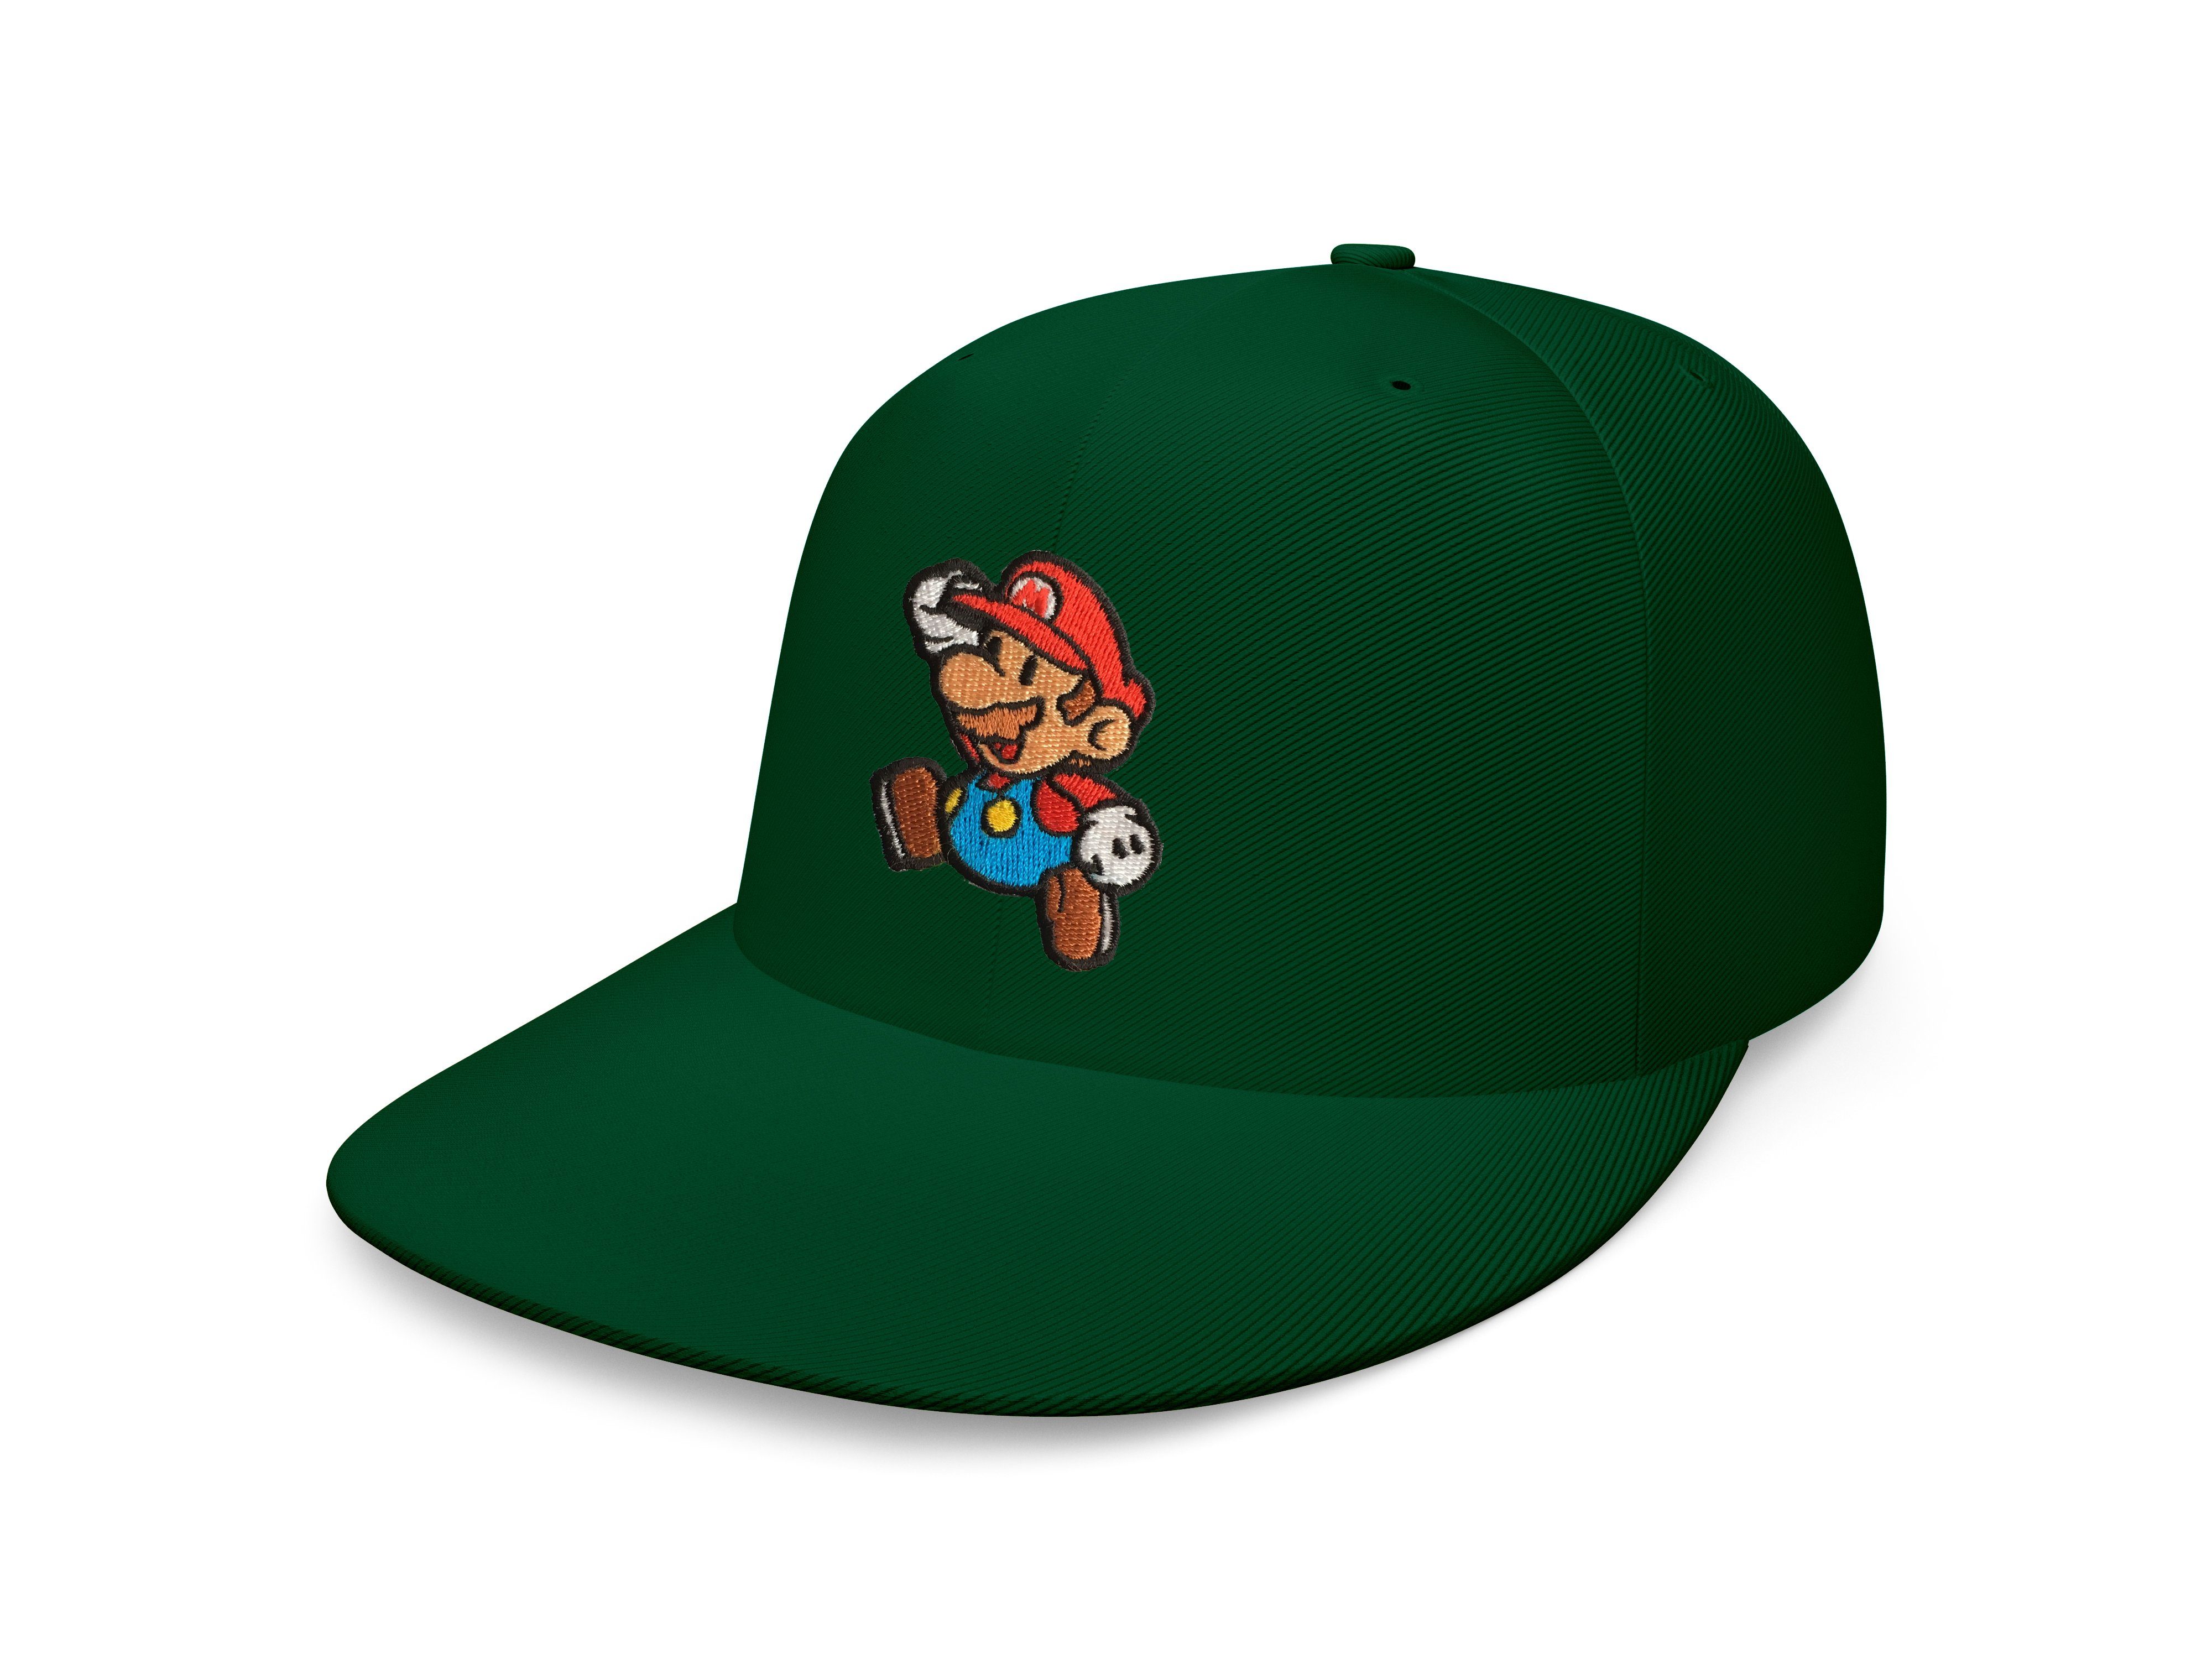 Erwachsene Cap Unisex & Flaschengrün Blondie Snapback Stick Mario Luigi Patch Brownie Nintendo Snapback Super